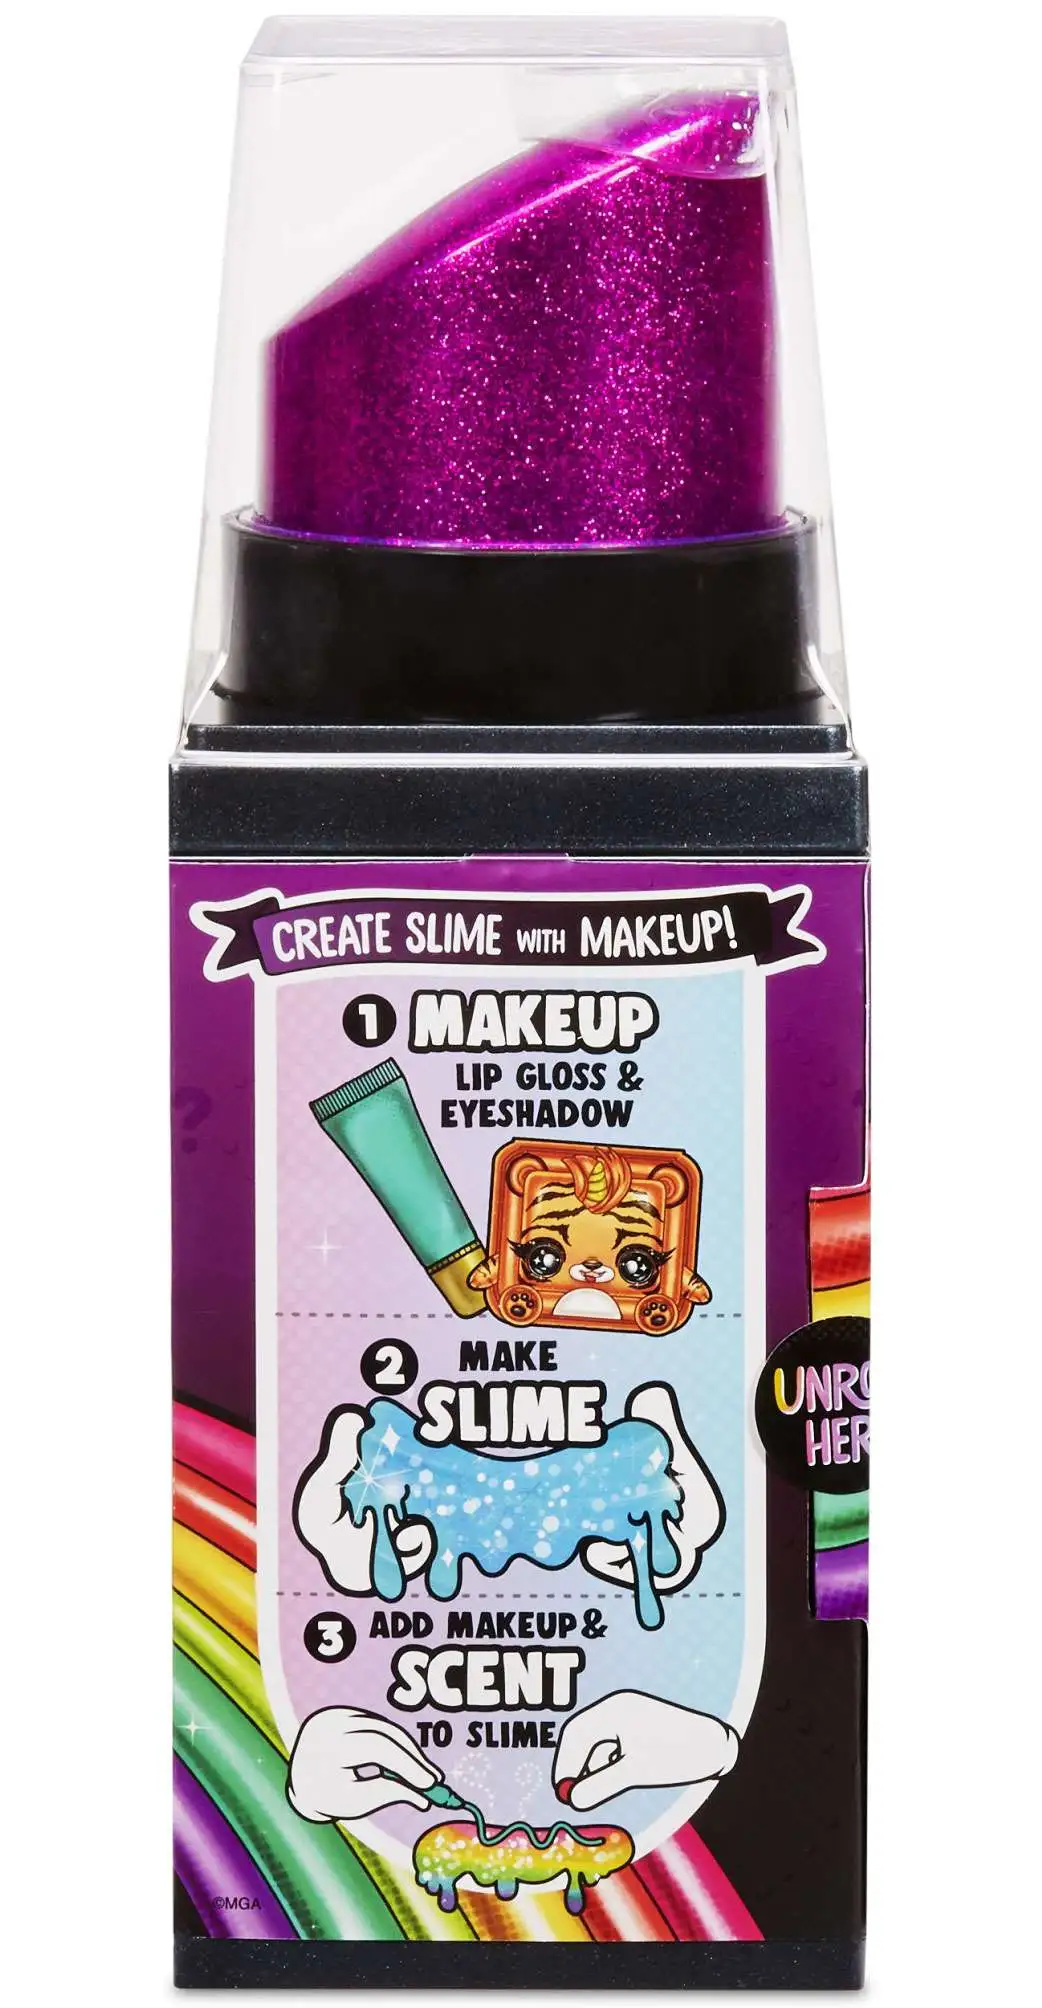 Poopsie Rainbow Surprise Makeup Surprise- Create DIY Slime with Makeup! 